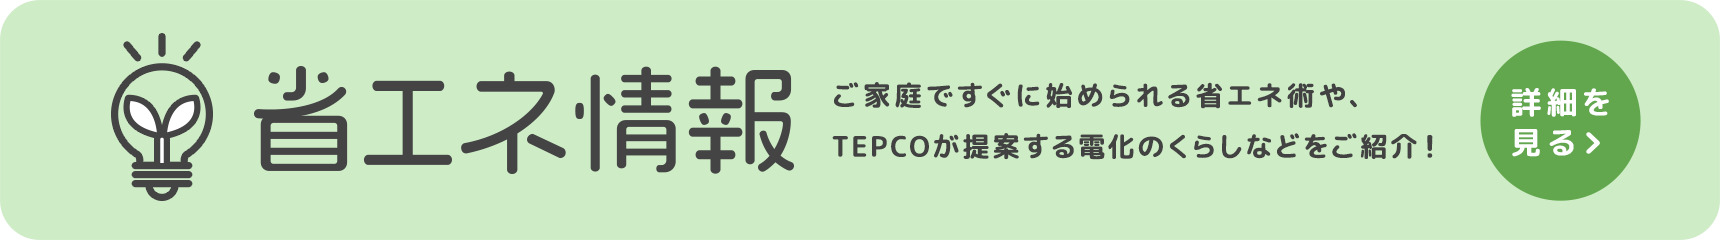 省エネ情報 ご家庭ですぐに始められる省エネ術や、TEPCOが提案する電化のくらしなどをご紹介! 詳細を見る